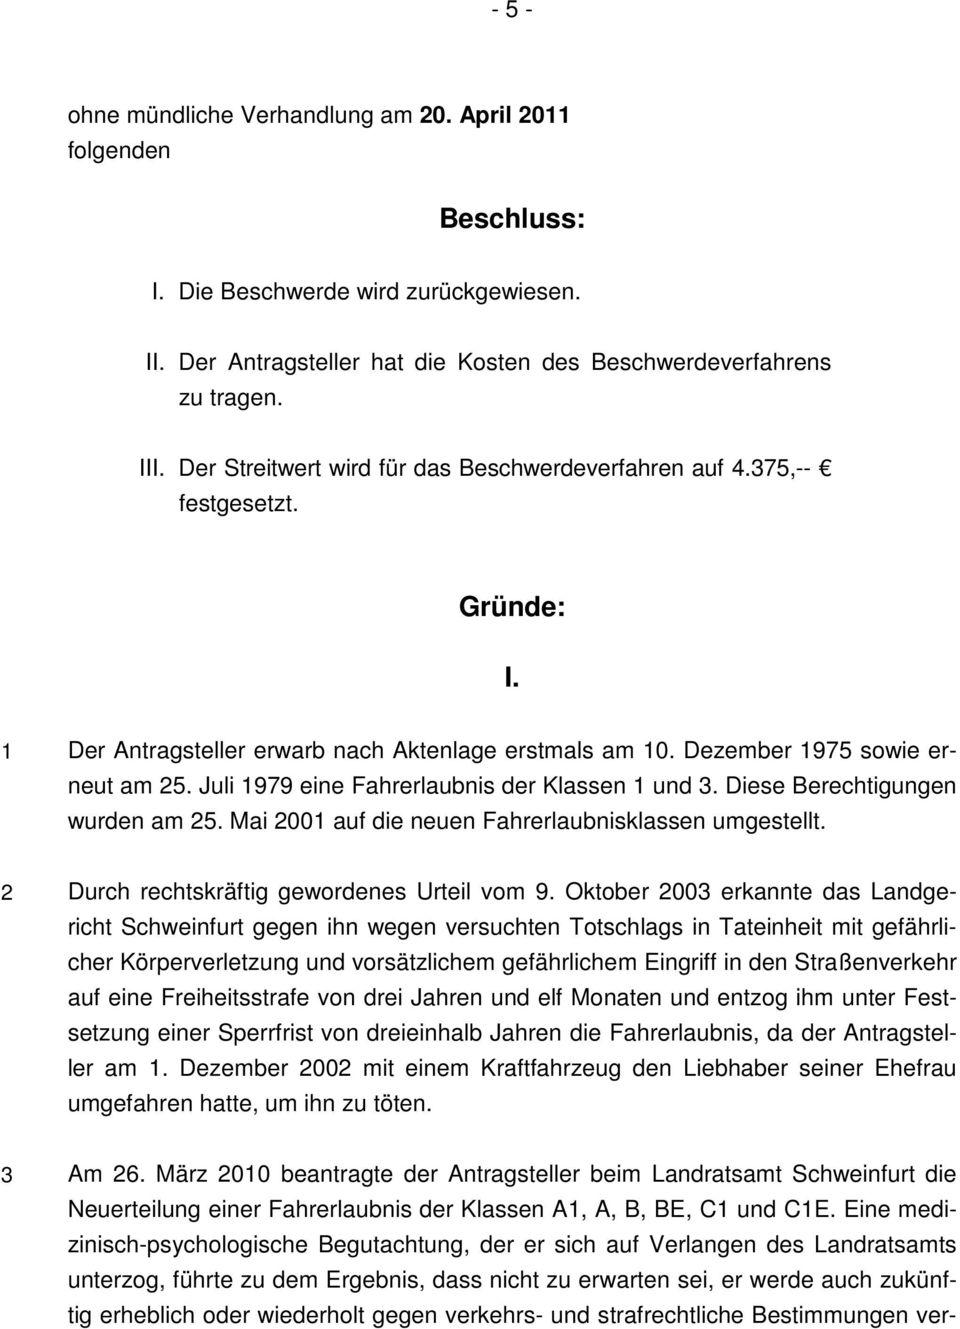 Landratsamt Schweinfurt - Neuerteilung der Fahrerlaubnis nach Entzug oder Verzicht 